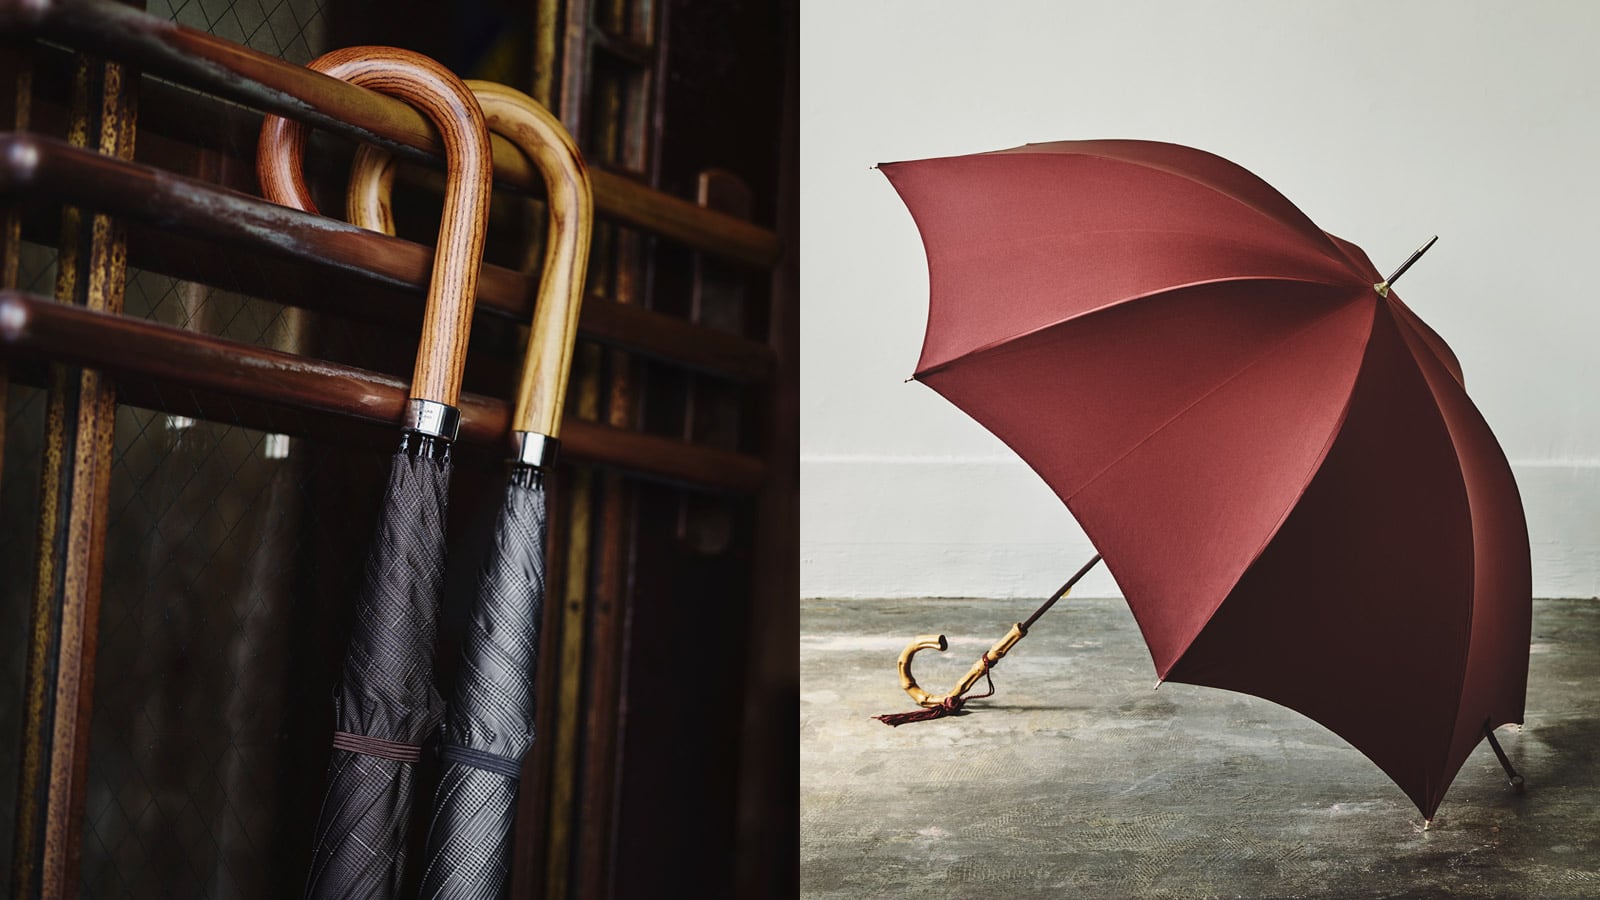 カスタムオーダーも。今日の傘の原型を創ったパイオニア FOX UMBRELLAS 